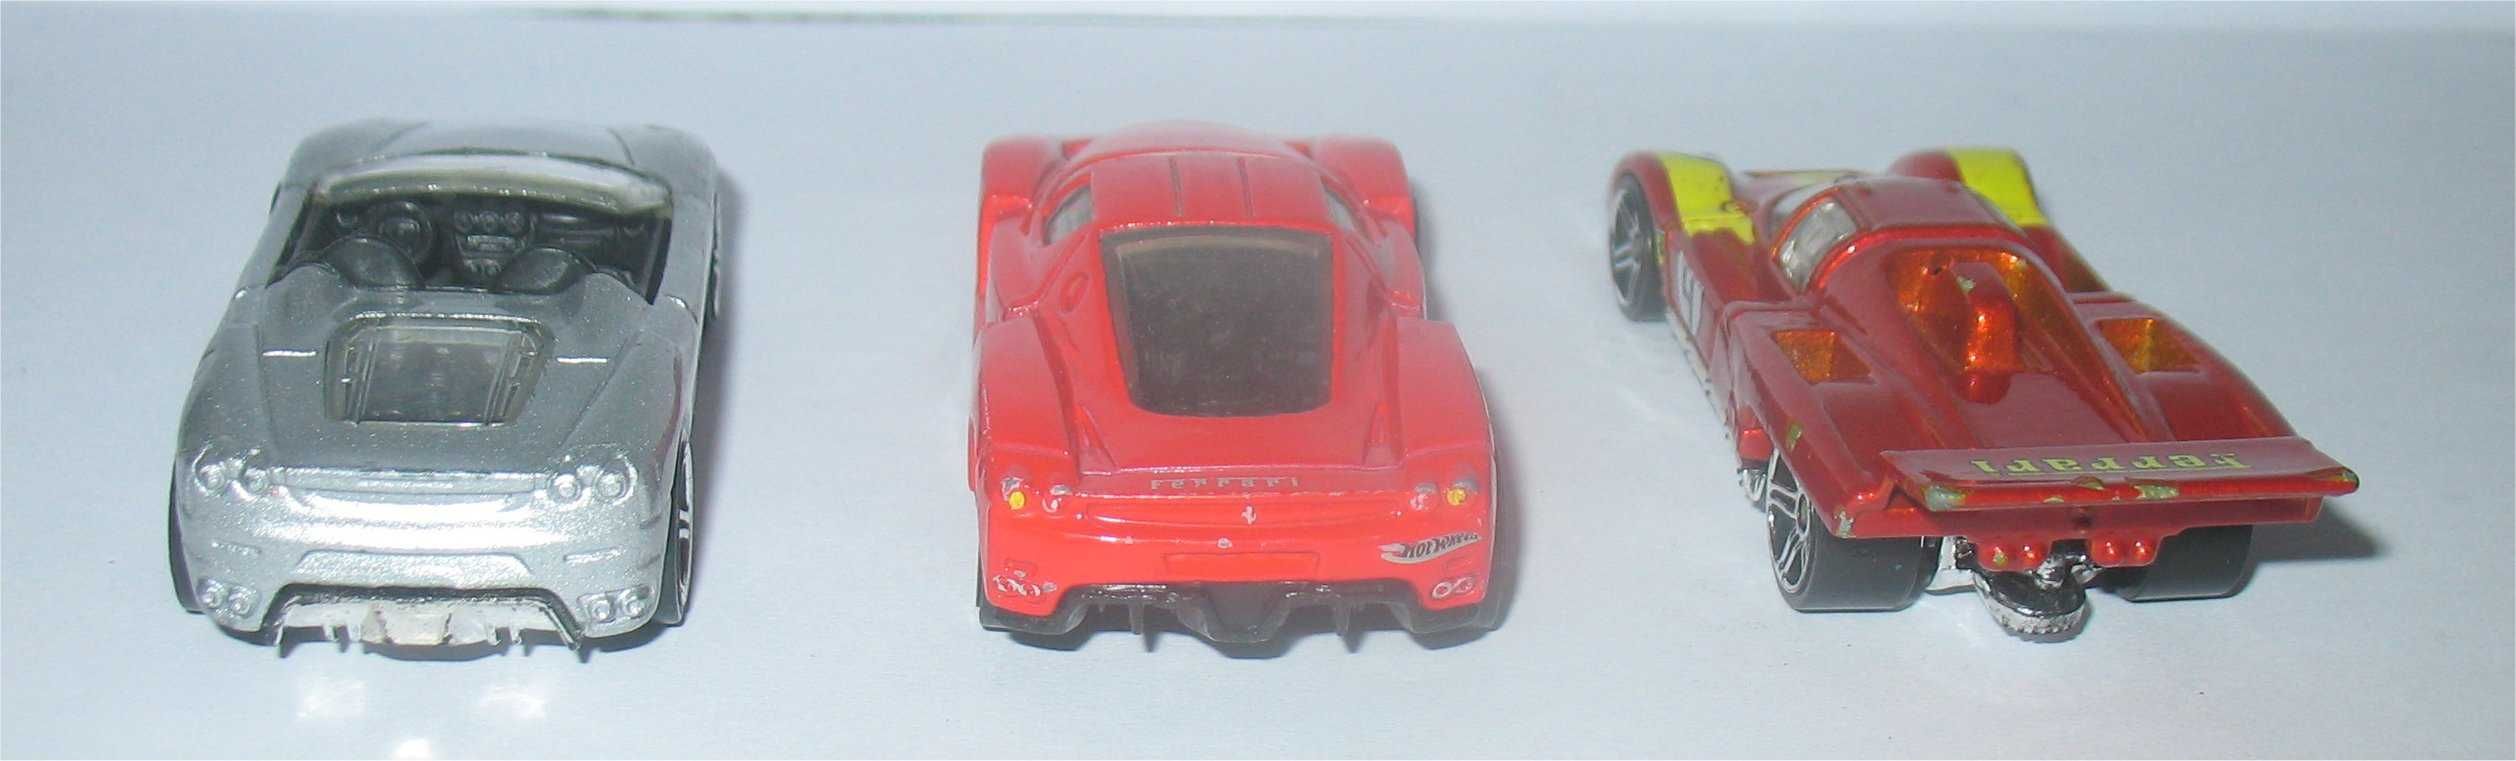 Hot Wheels - 3 Ferrari